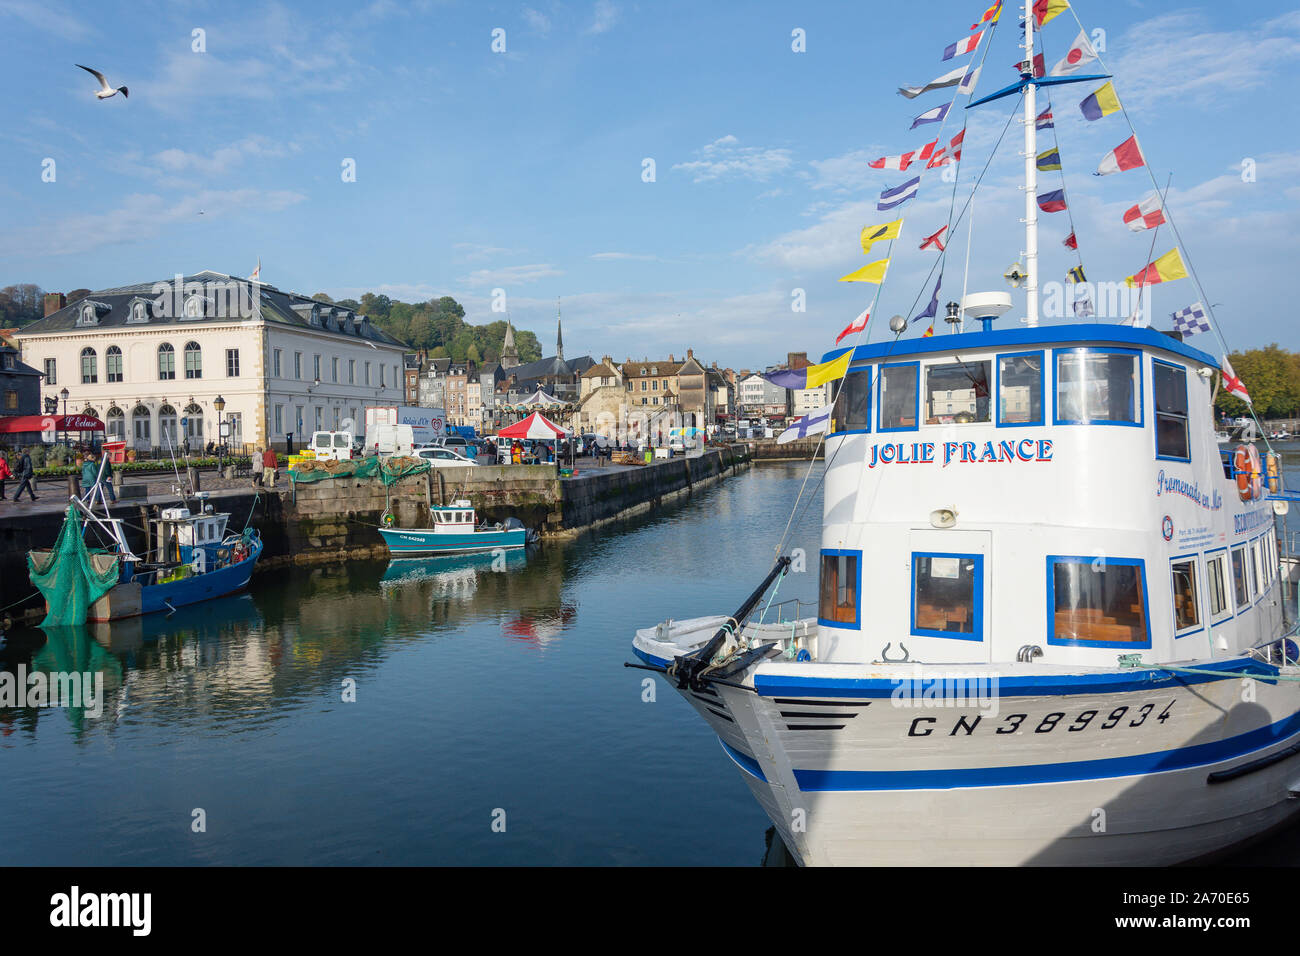 'Jolie France' excursion boat, Honfleur Harbour, Honfleur, Normandy, France Stock Photo